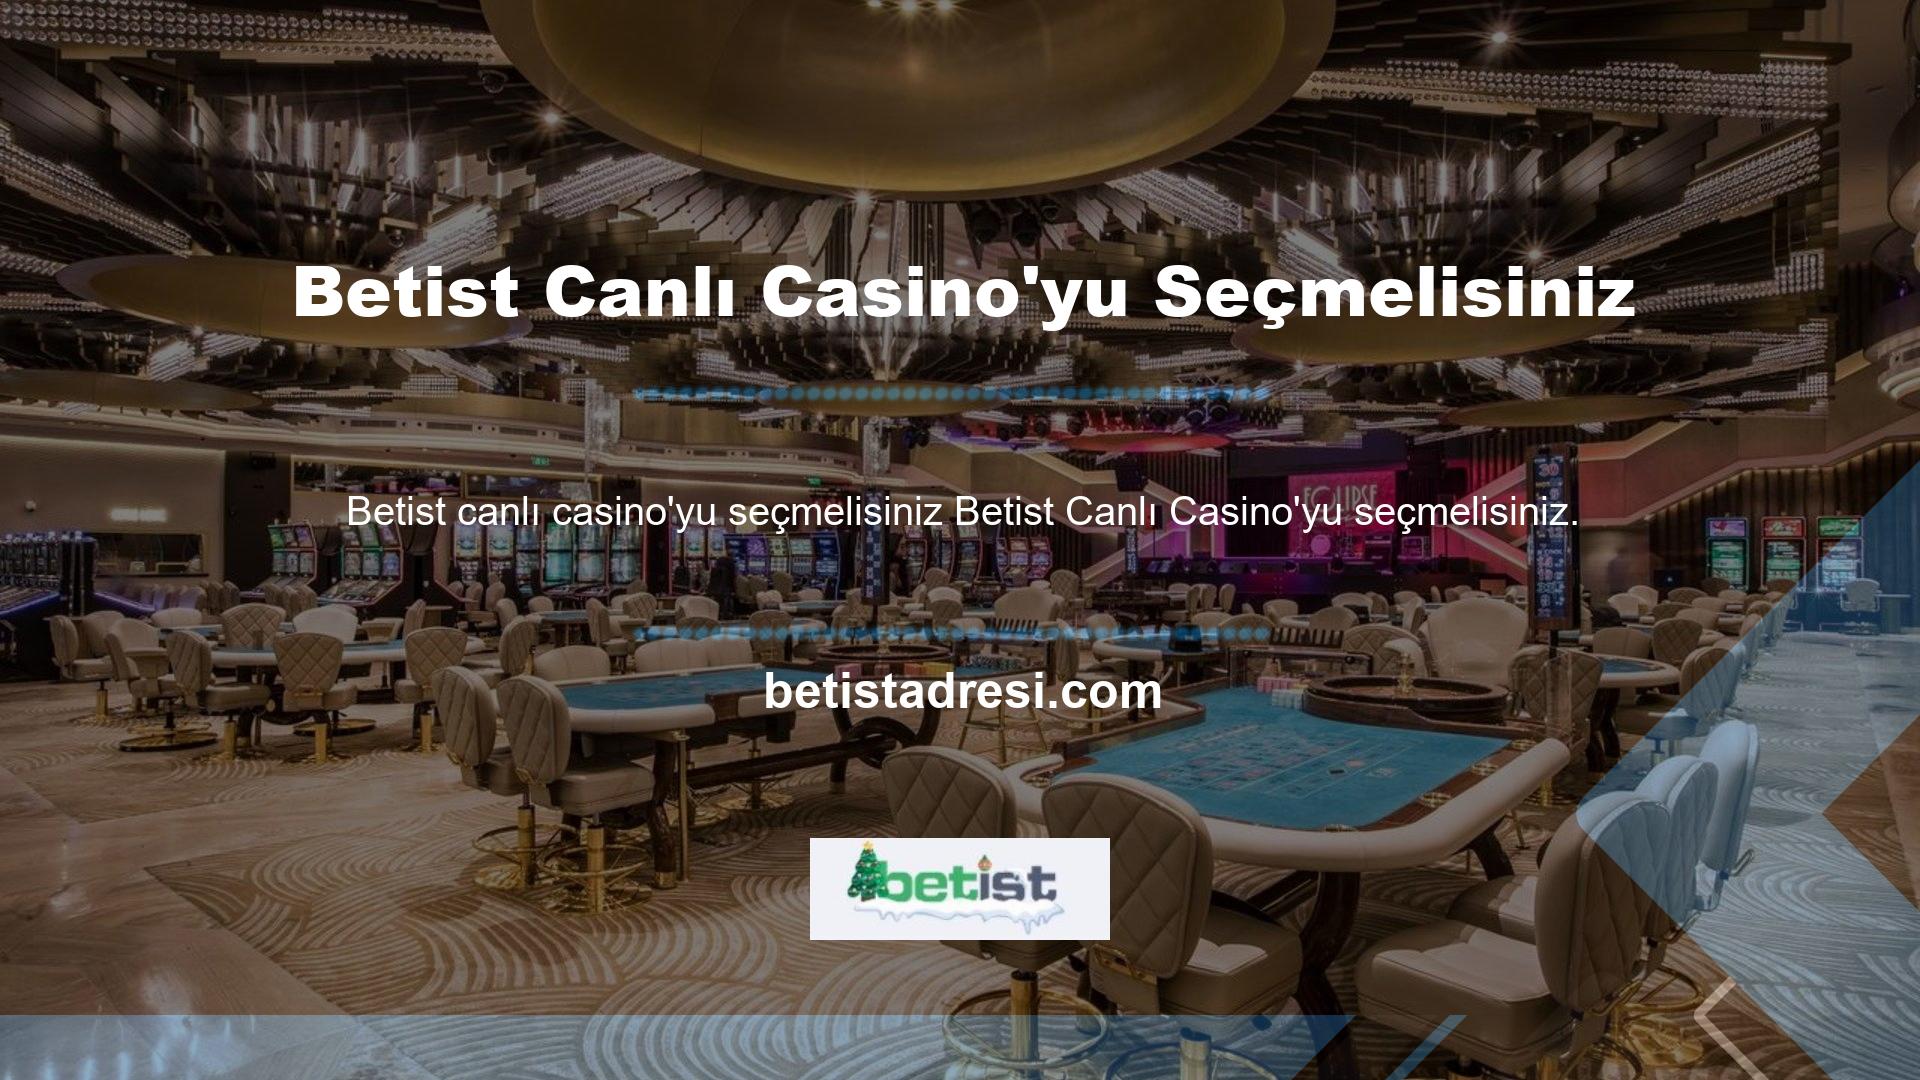 Canlı casinolar neden tercih ediliyor? Site yapısında belirlenenlere göre bahis yapmak oldukça iyi bilinen ve güvenlidir